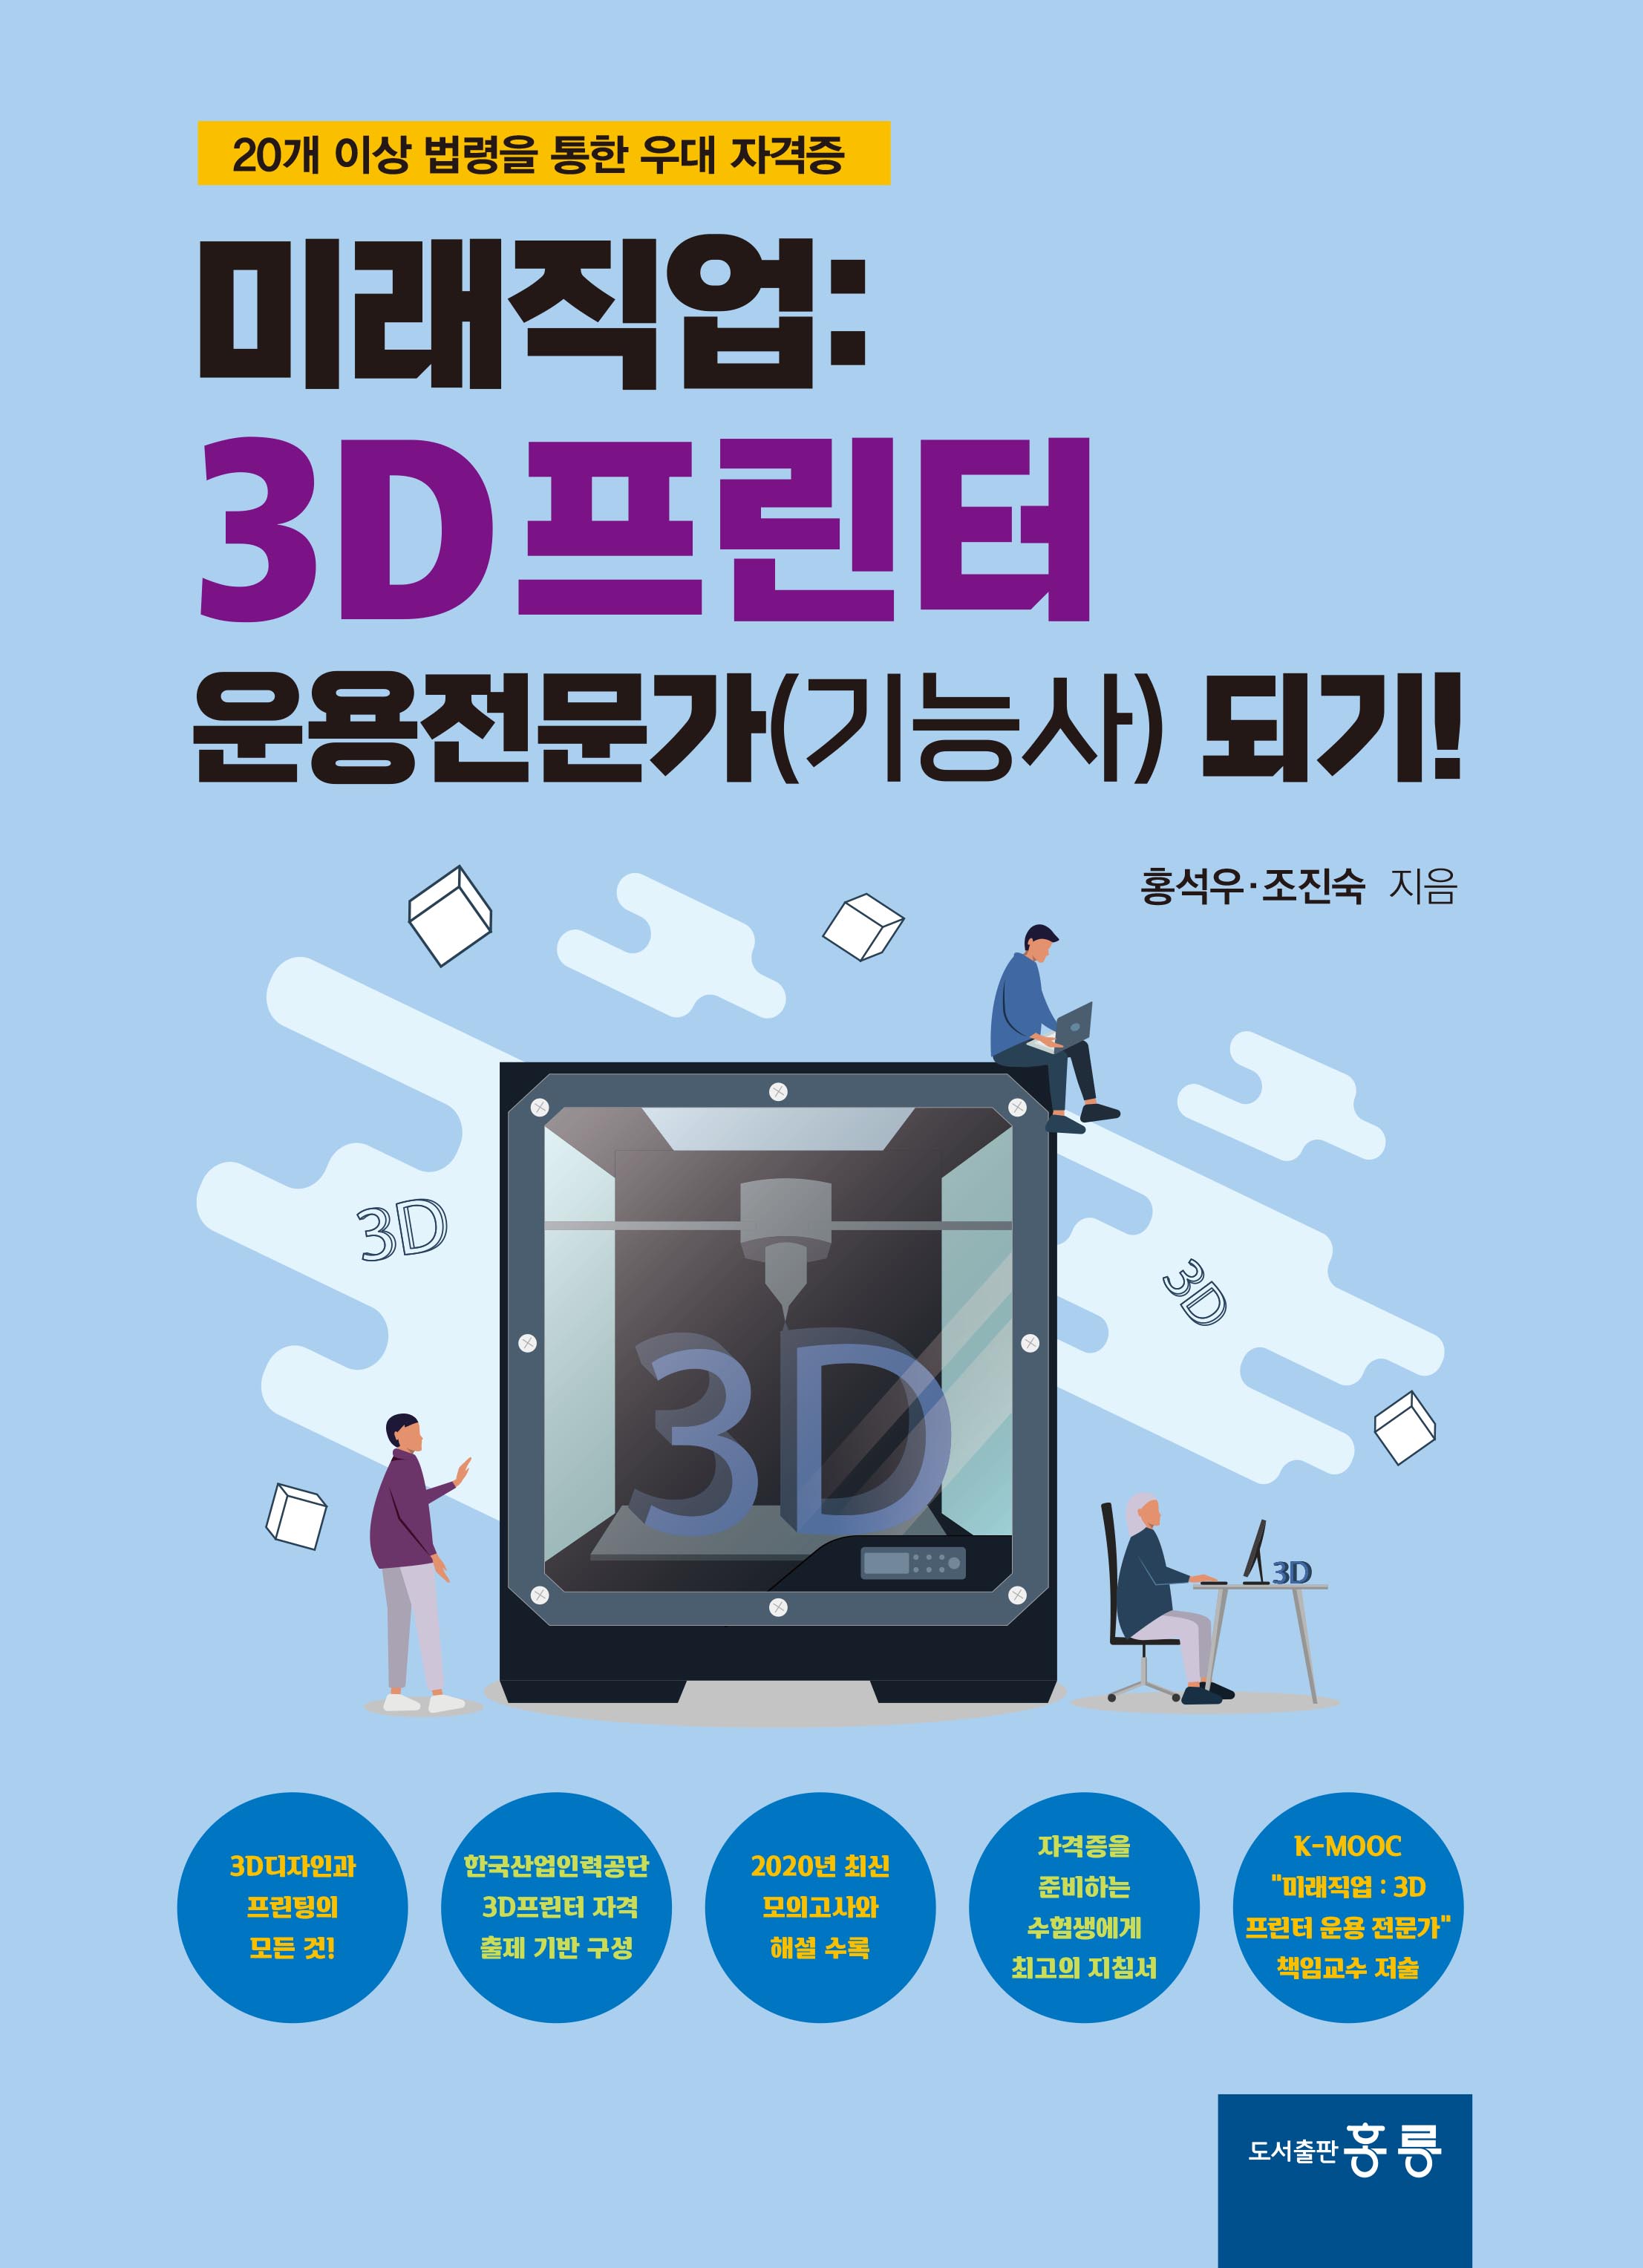 미래직업: 3D프린터 운용전문가(기능사) 되기!